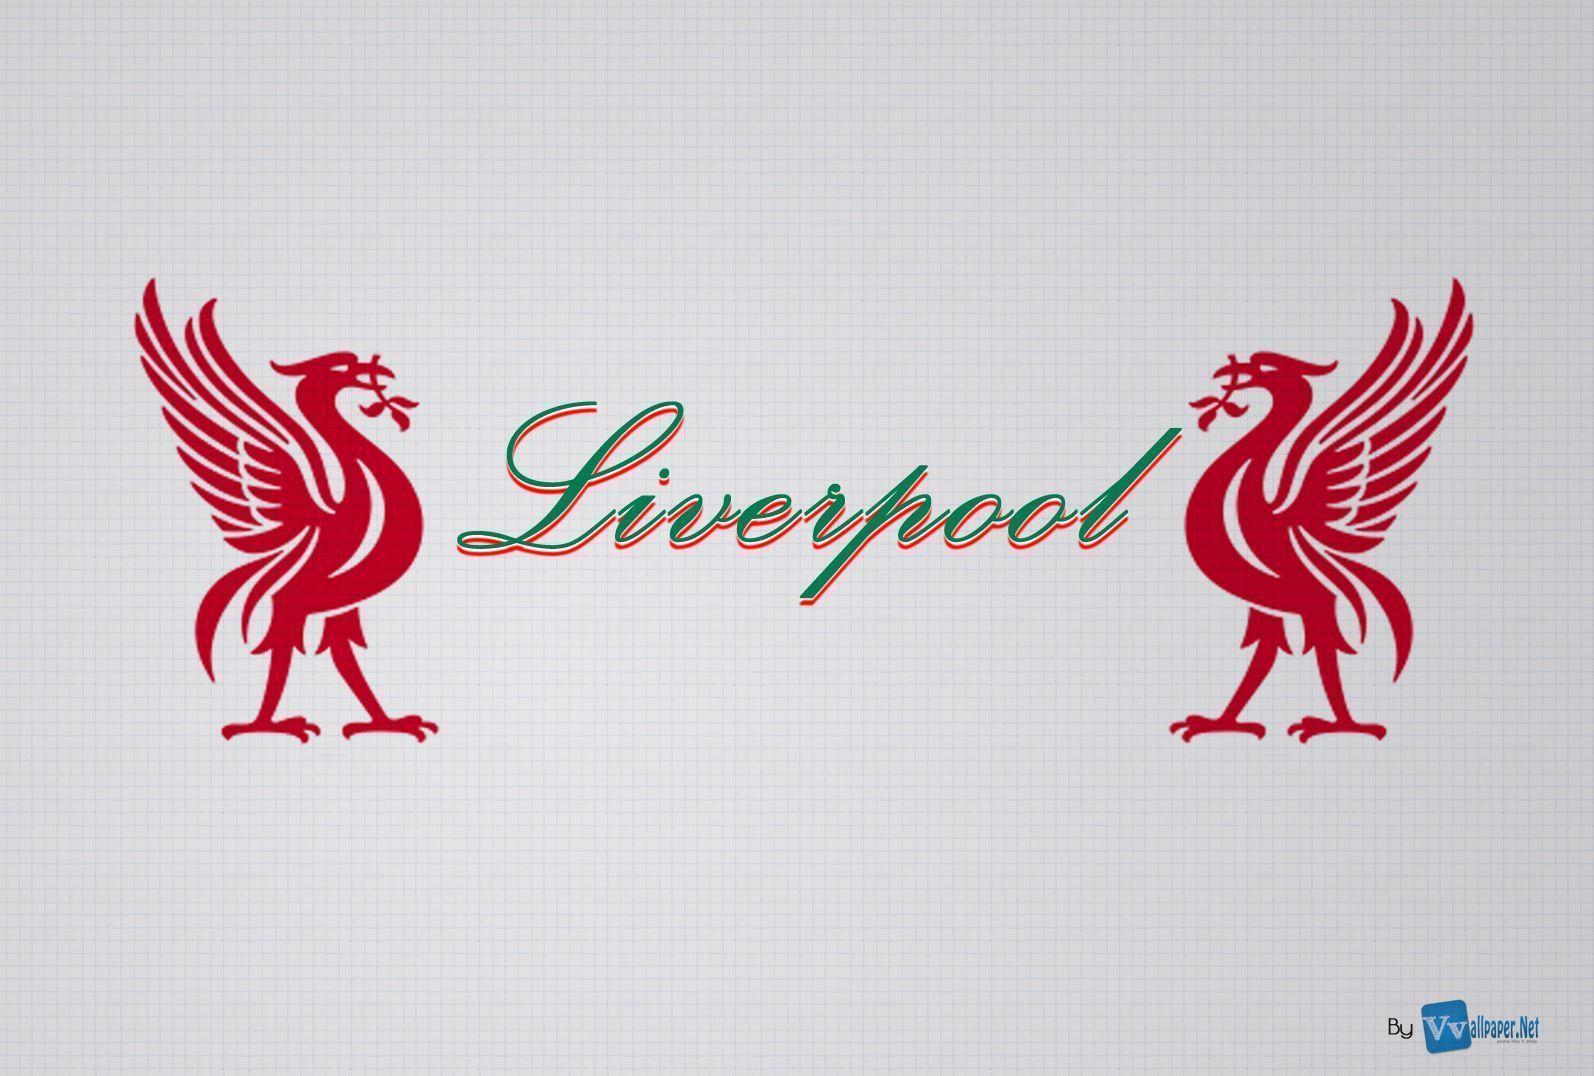 pic new posts: Liverpool Fc 3D Wallpaper